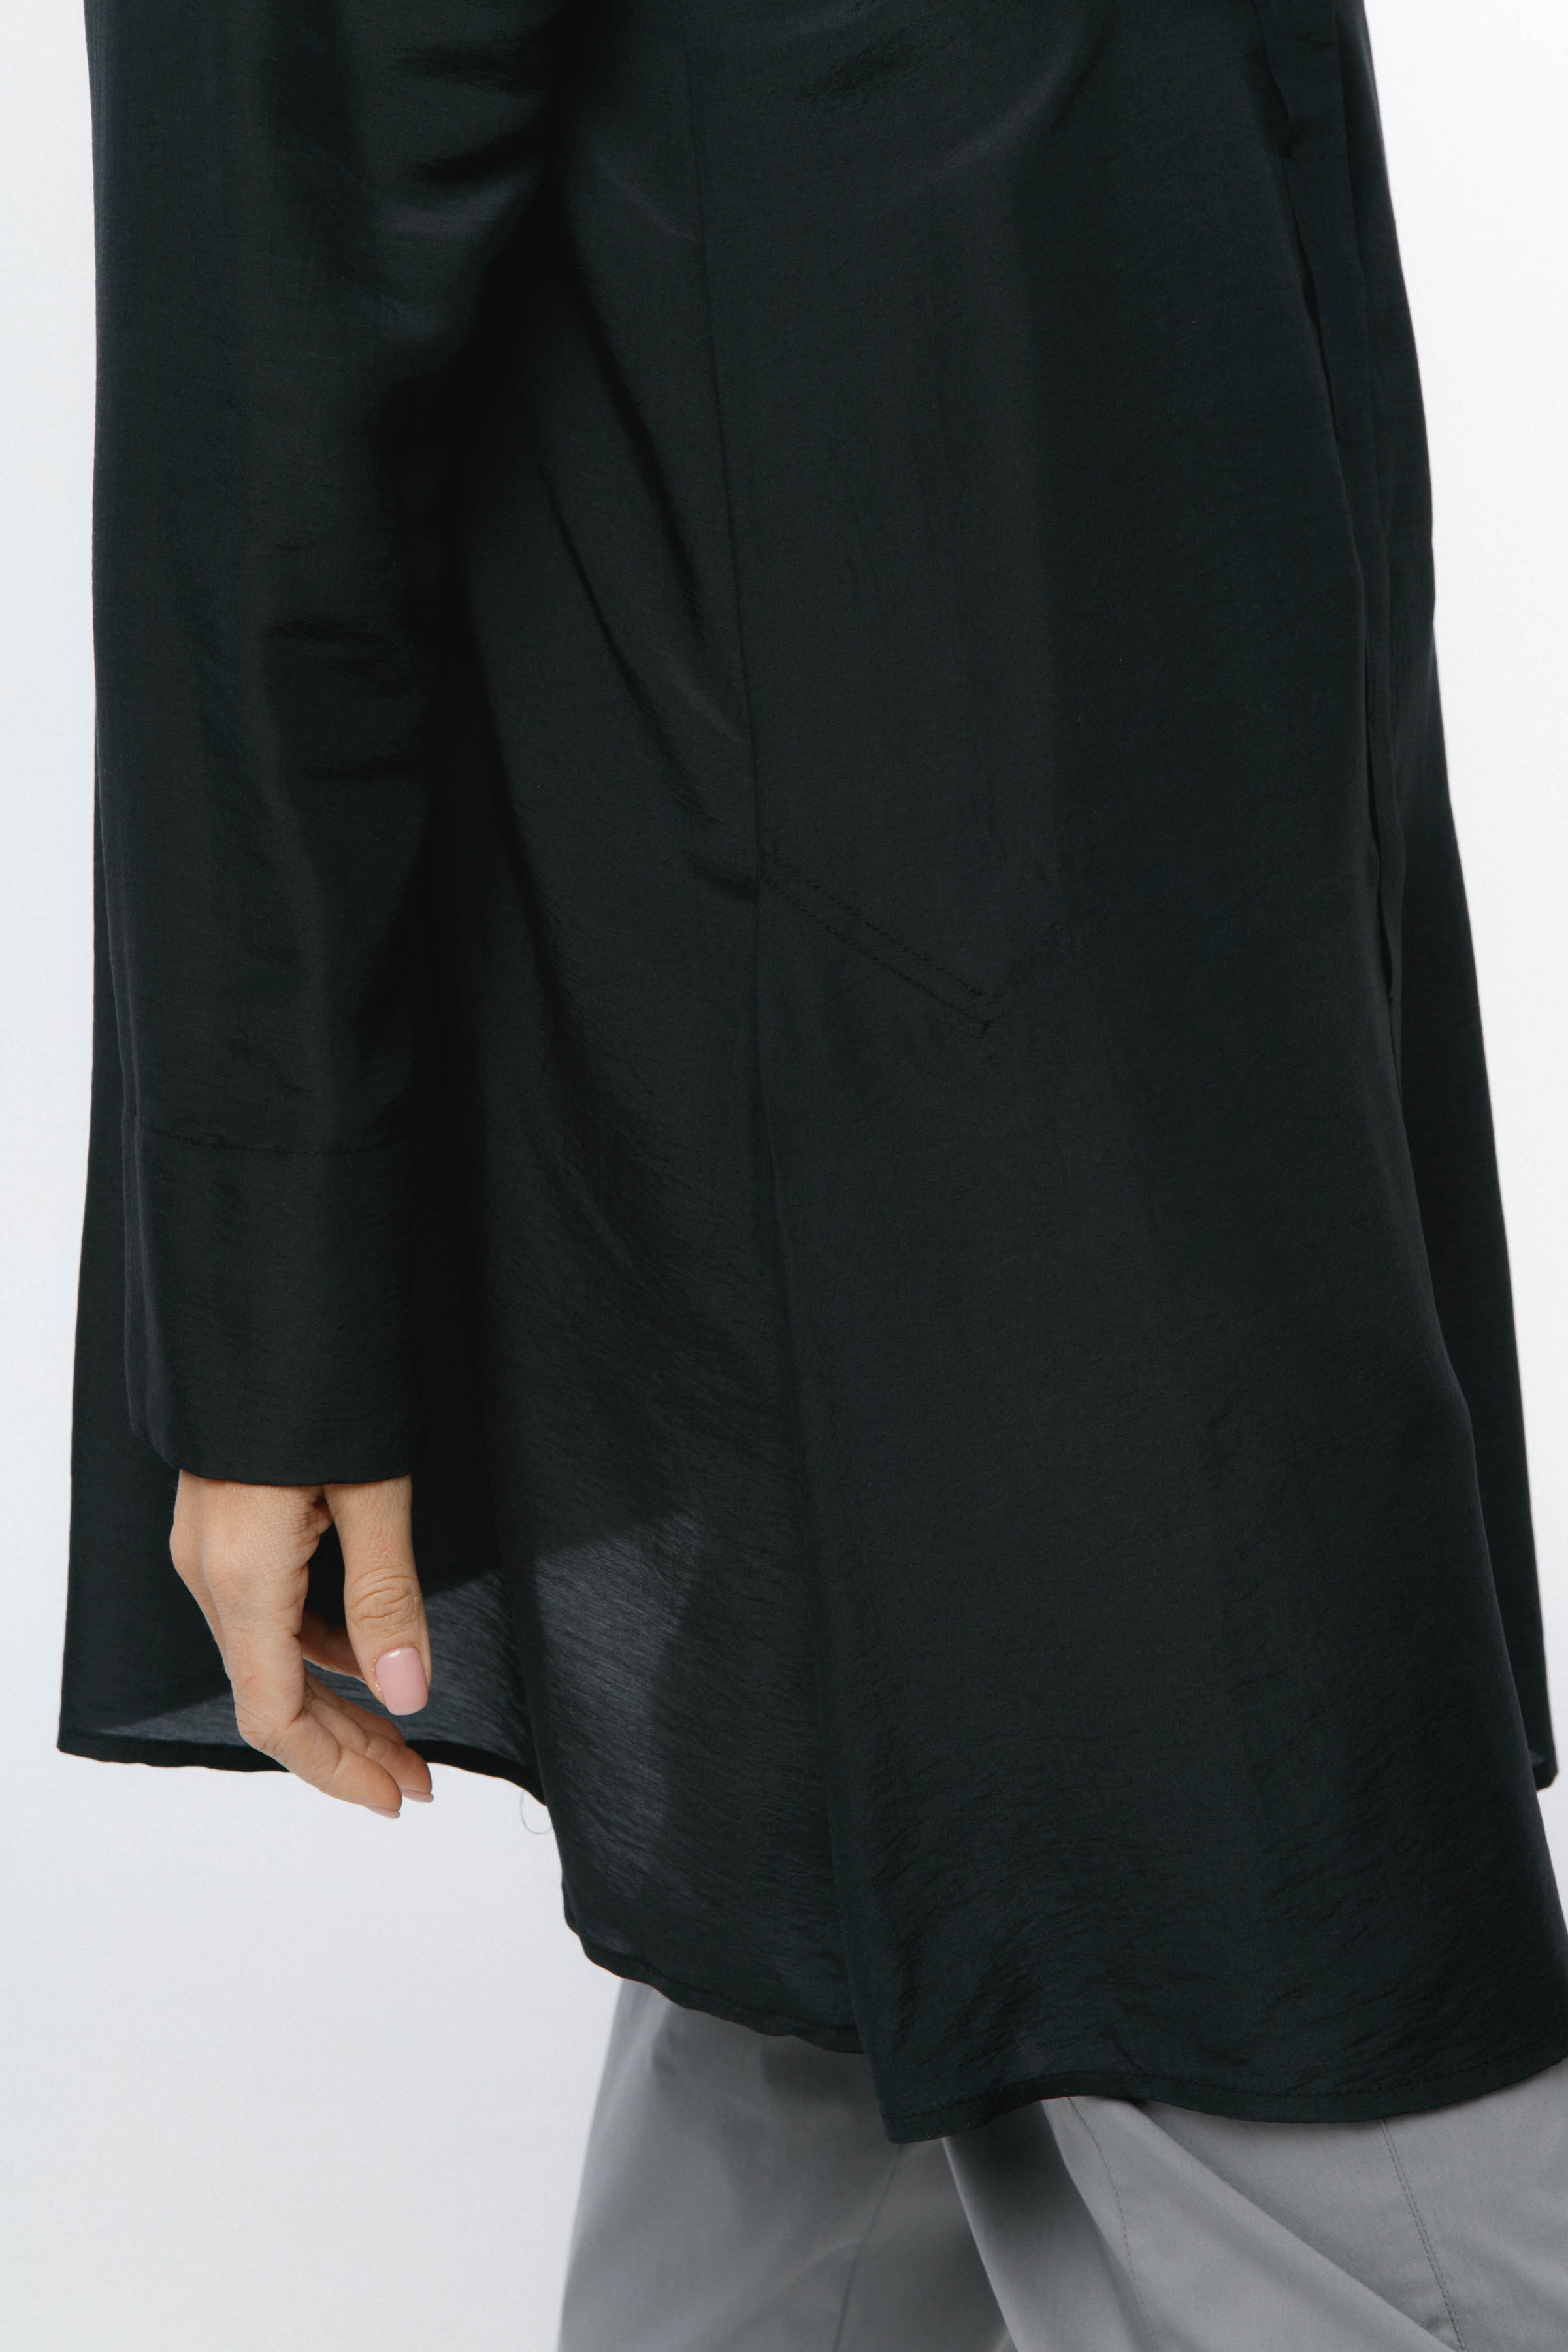 Рубашка шёлк 00 Черный (noir) от Lesel (Лесель)! Заказывайте по ✆ 8 (800) 777 02 37